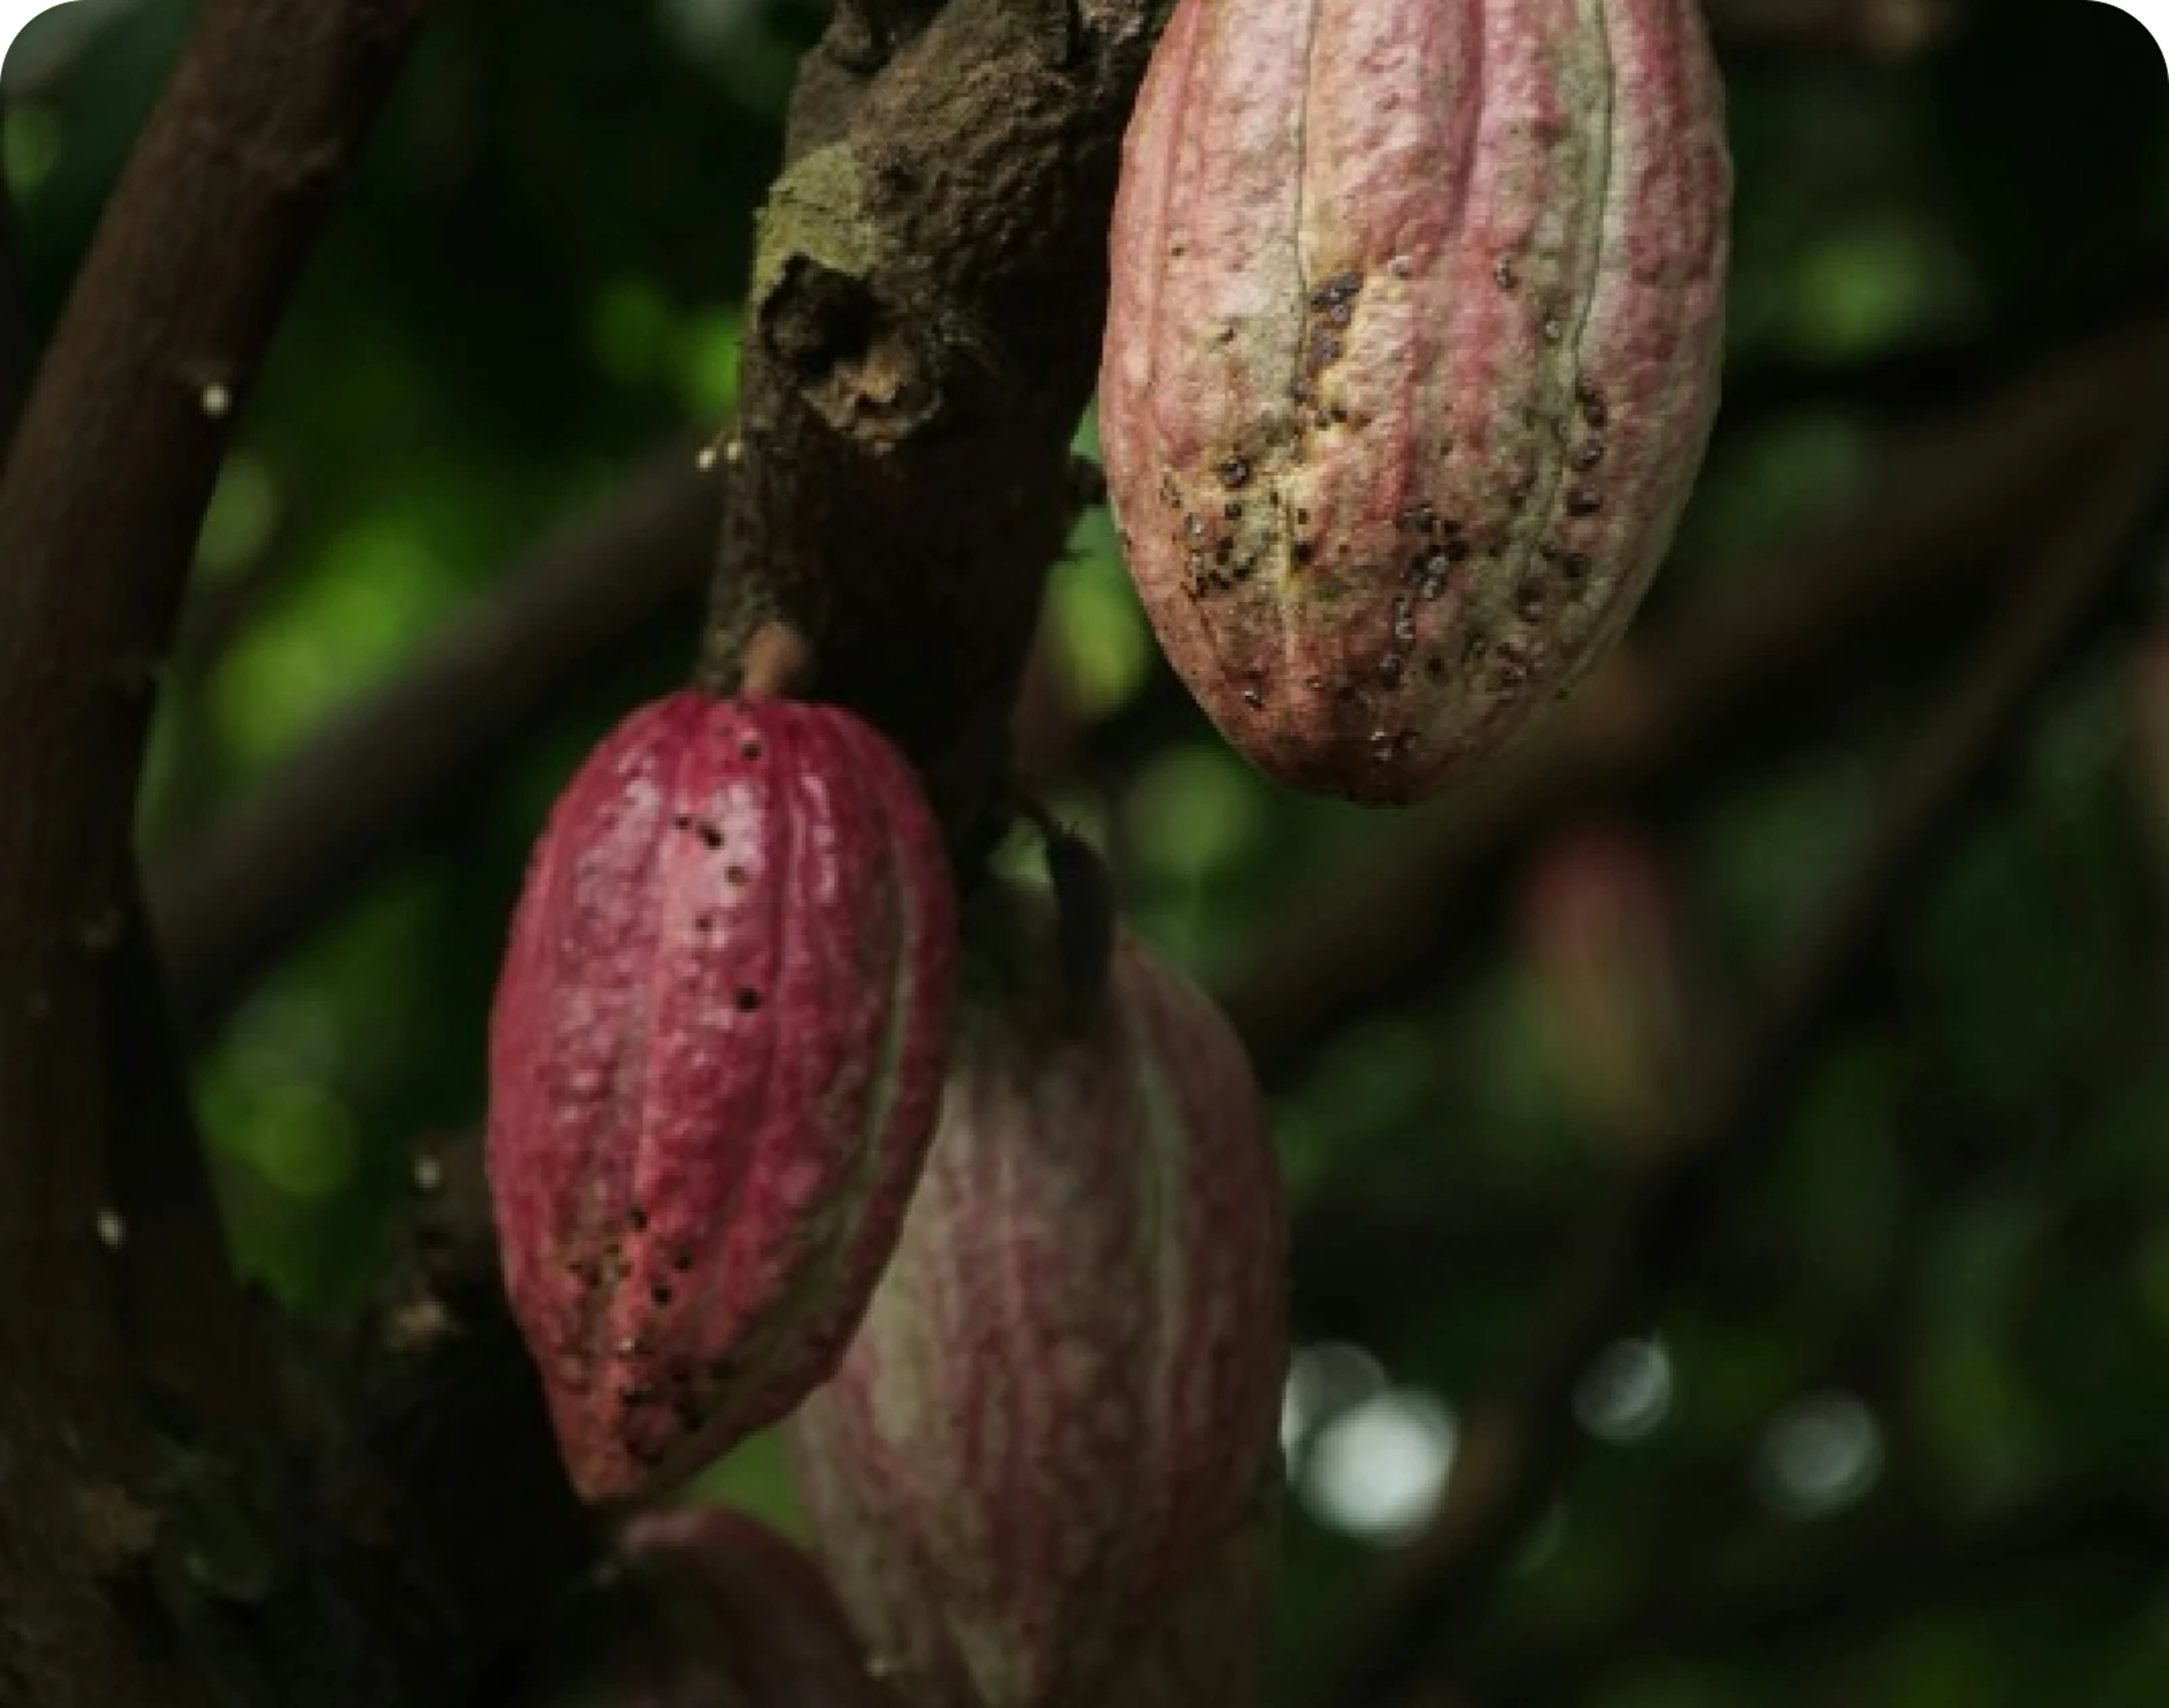 Cocoa farmer